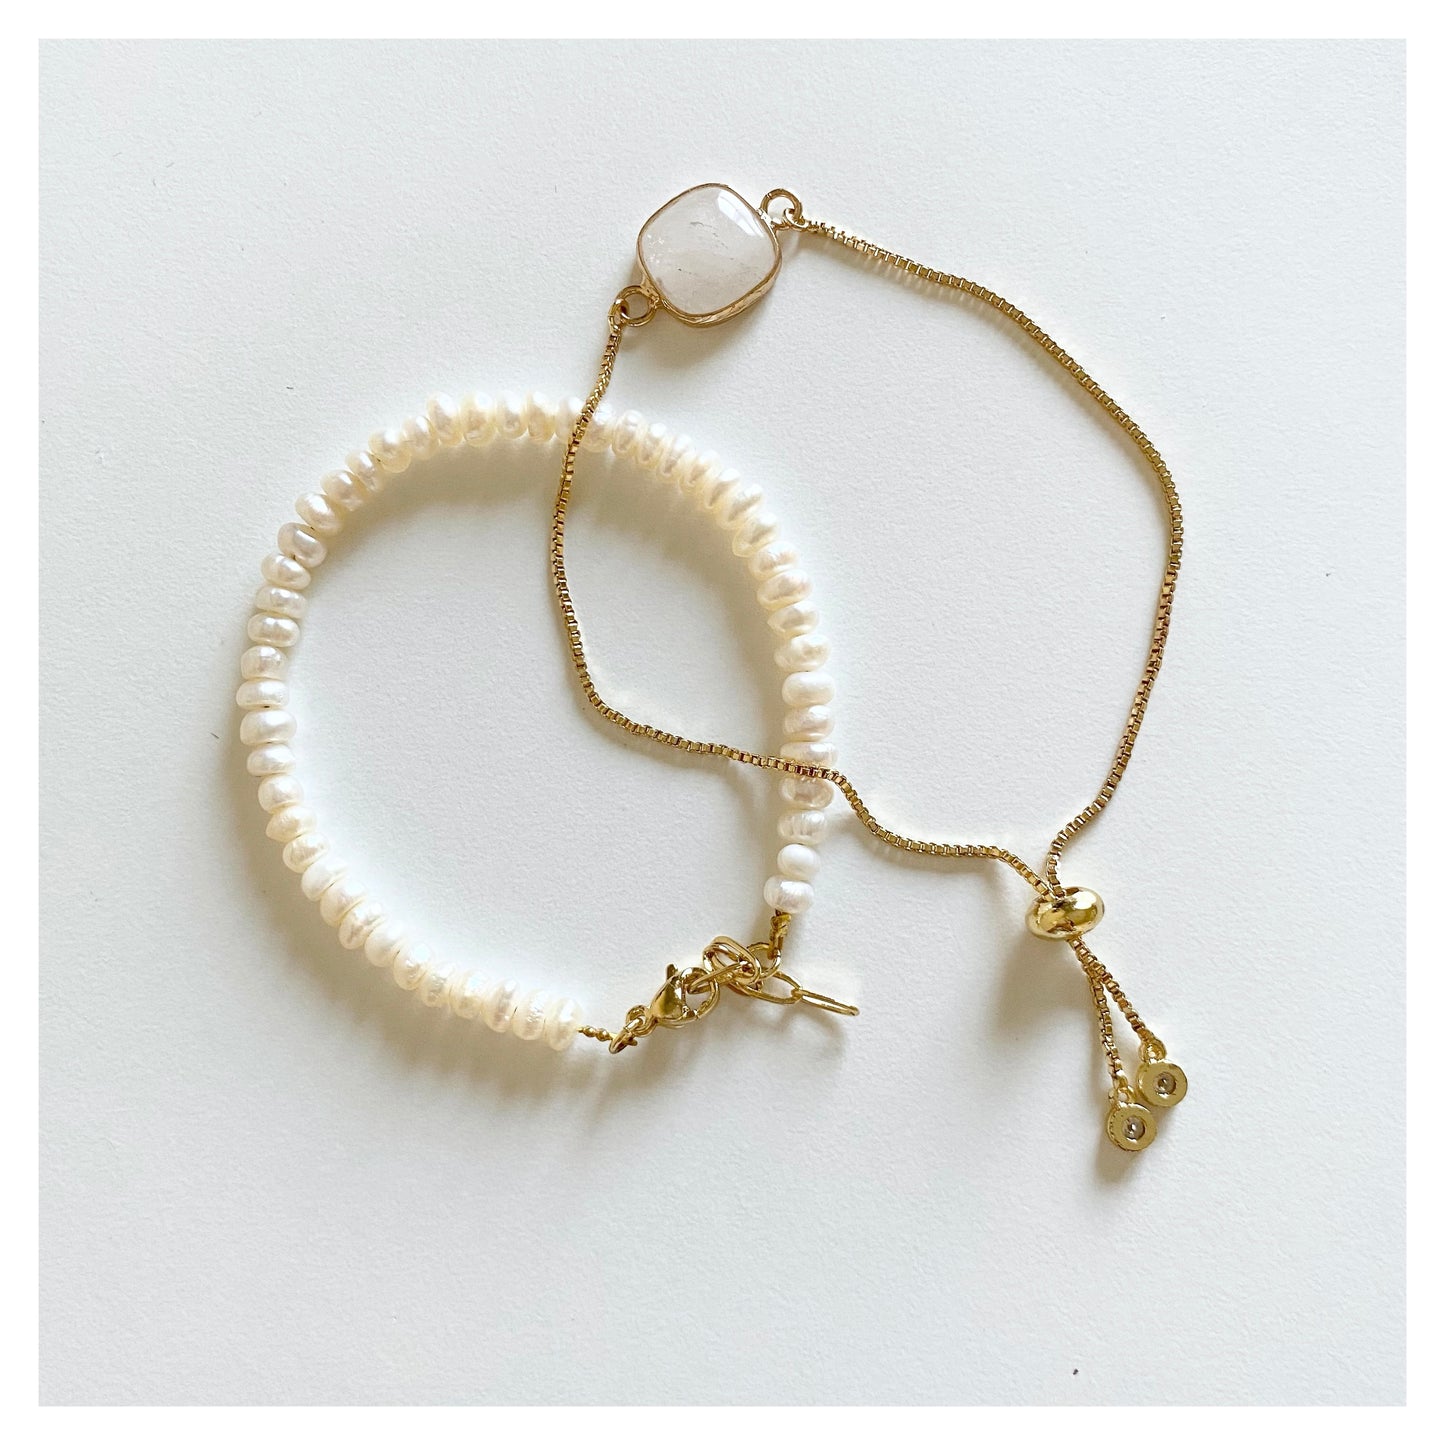 Pearl and Clear Quartz Bracelet Set